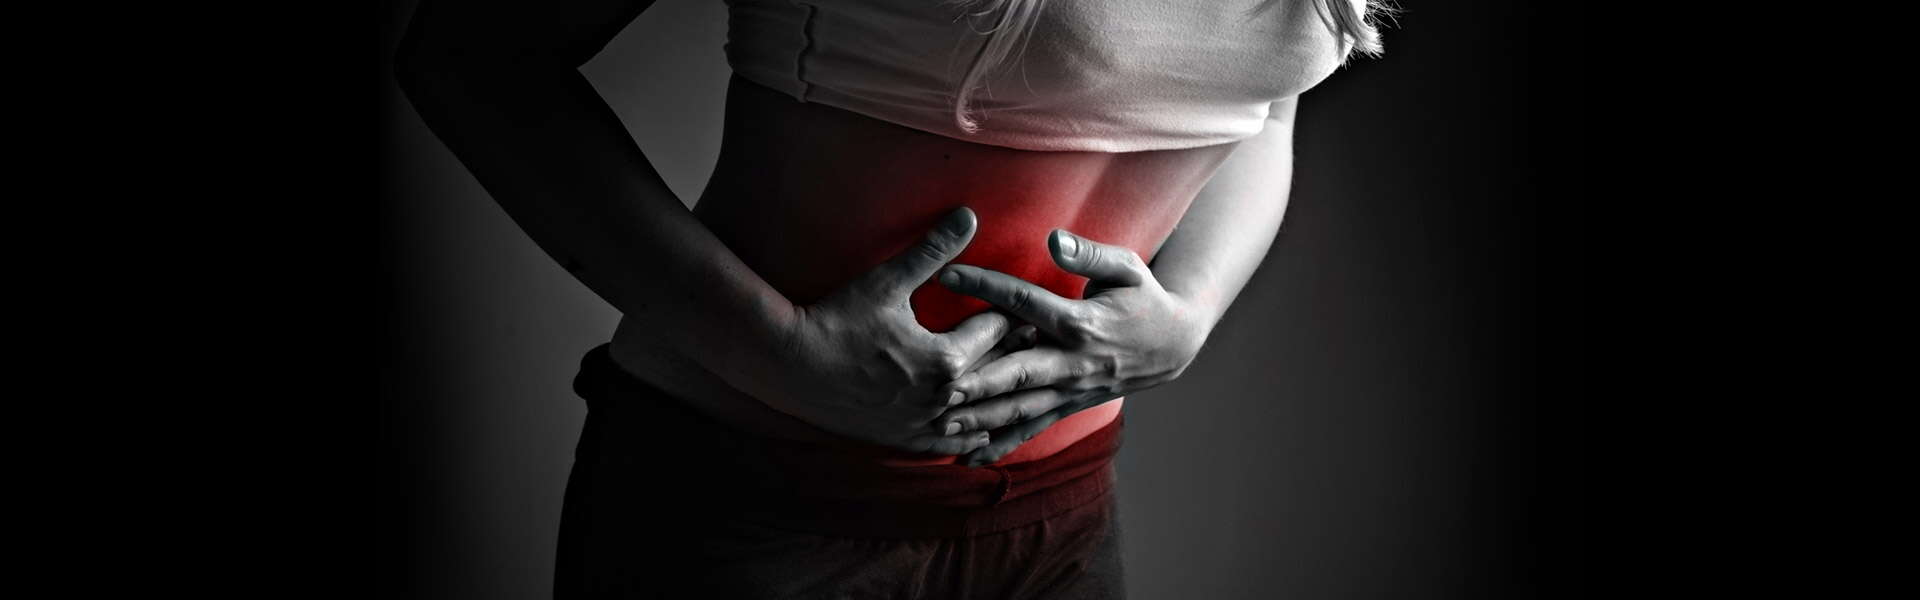 Douleurs et gonflements abdominaux : causes et remèdes